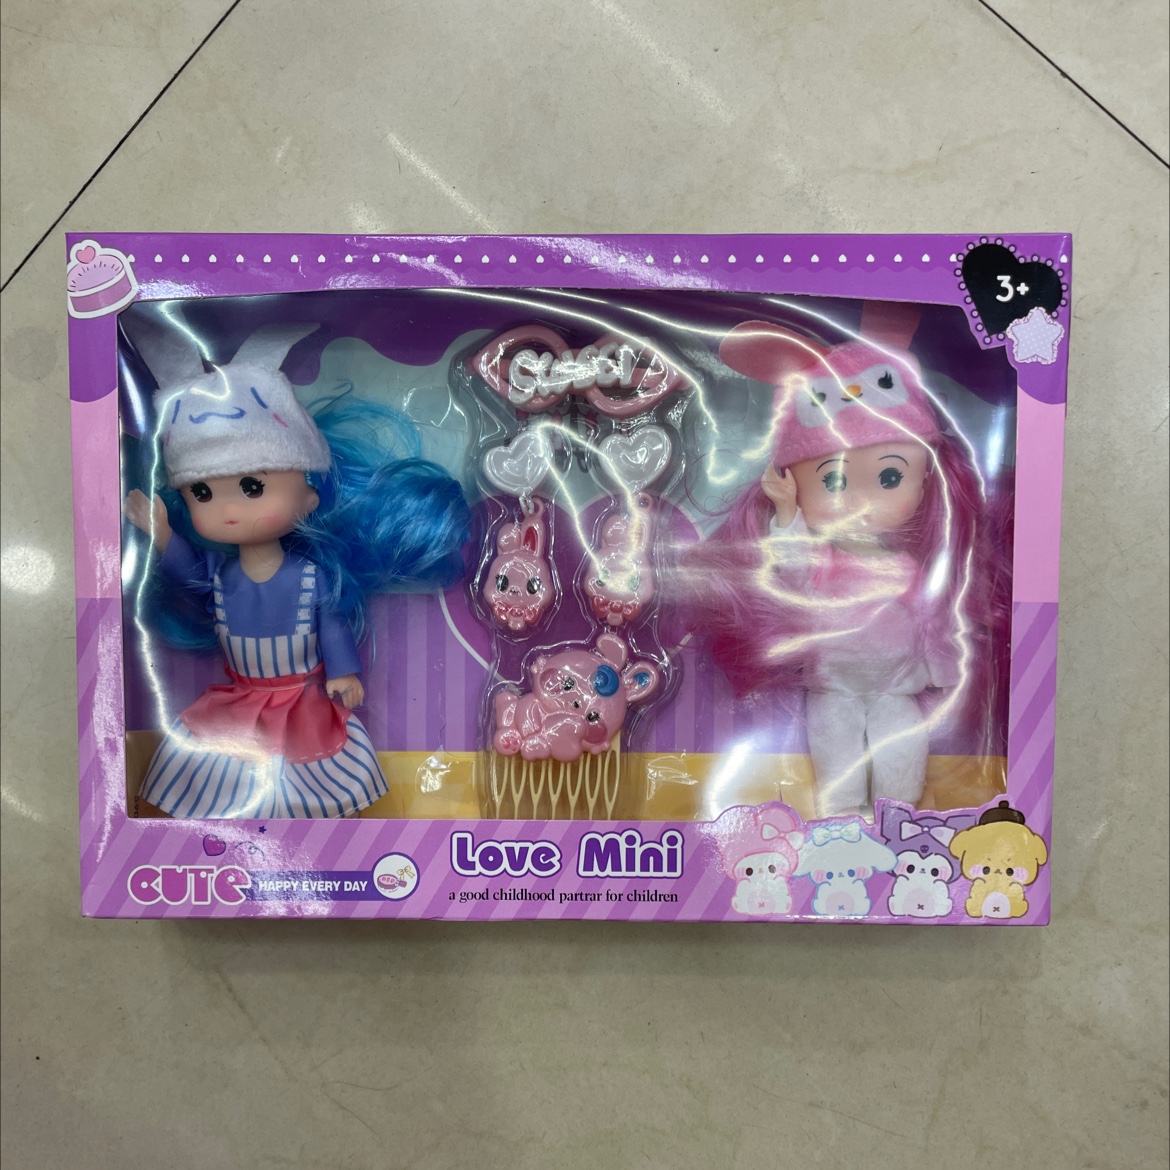 过家家小孩儿童玩具6寸实心身体库洛米系列娃娃带配件衣服多款混装芭比娃娃玩具